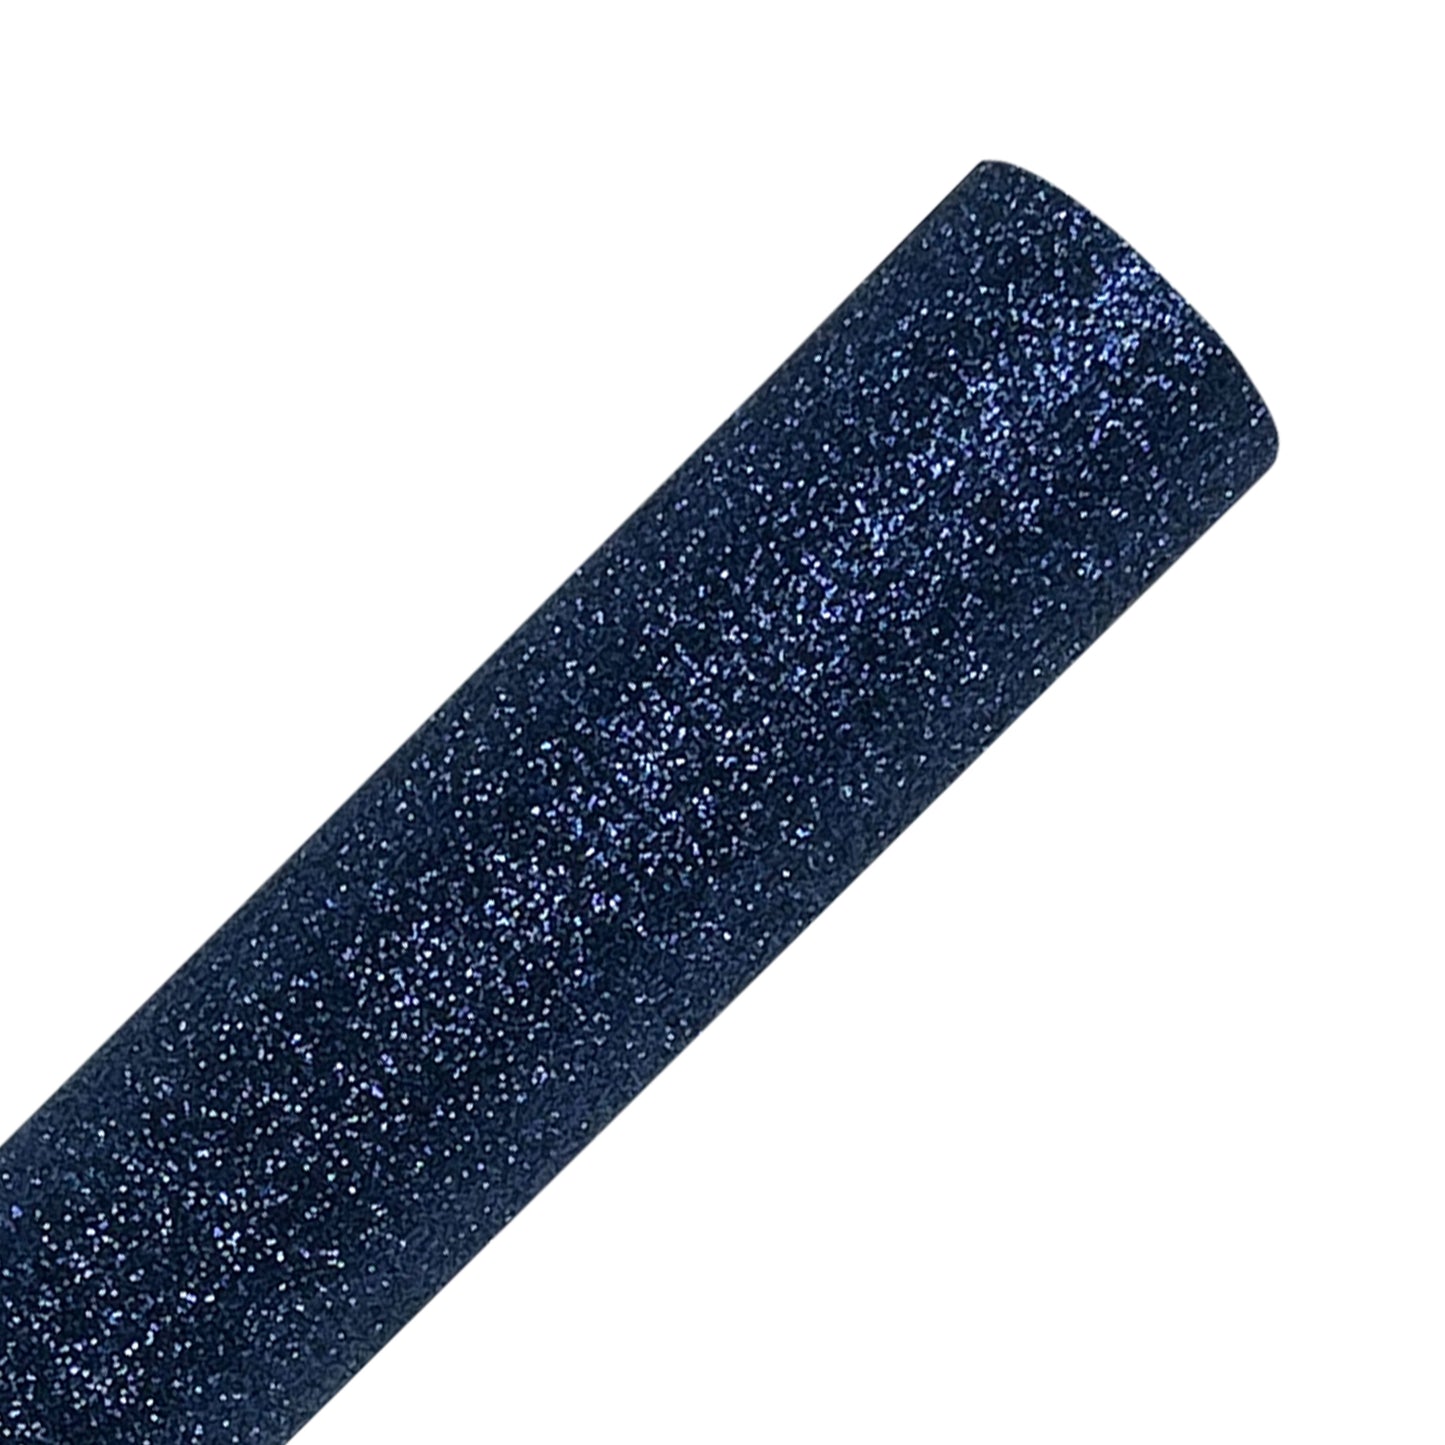 Navy Blue Glitter Heat Transfer Vinyl Rolls By Craftables